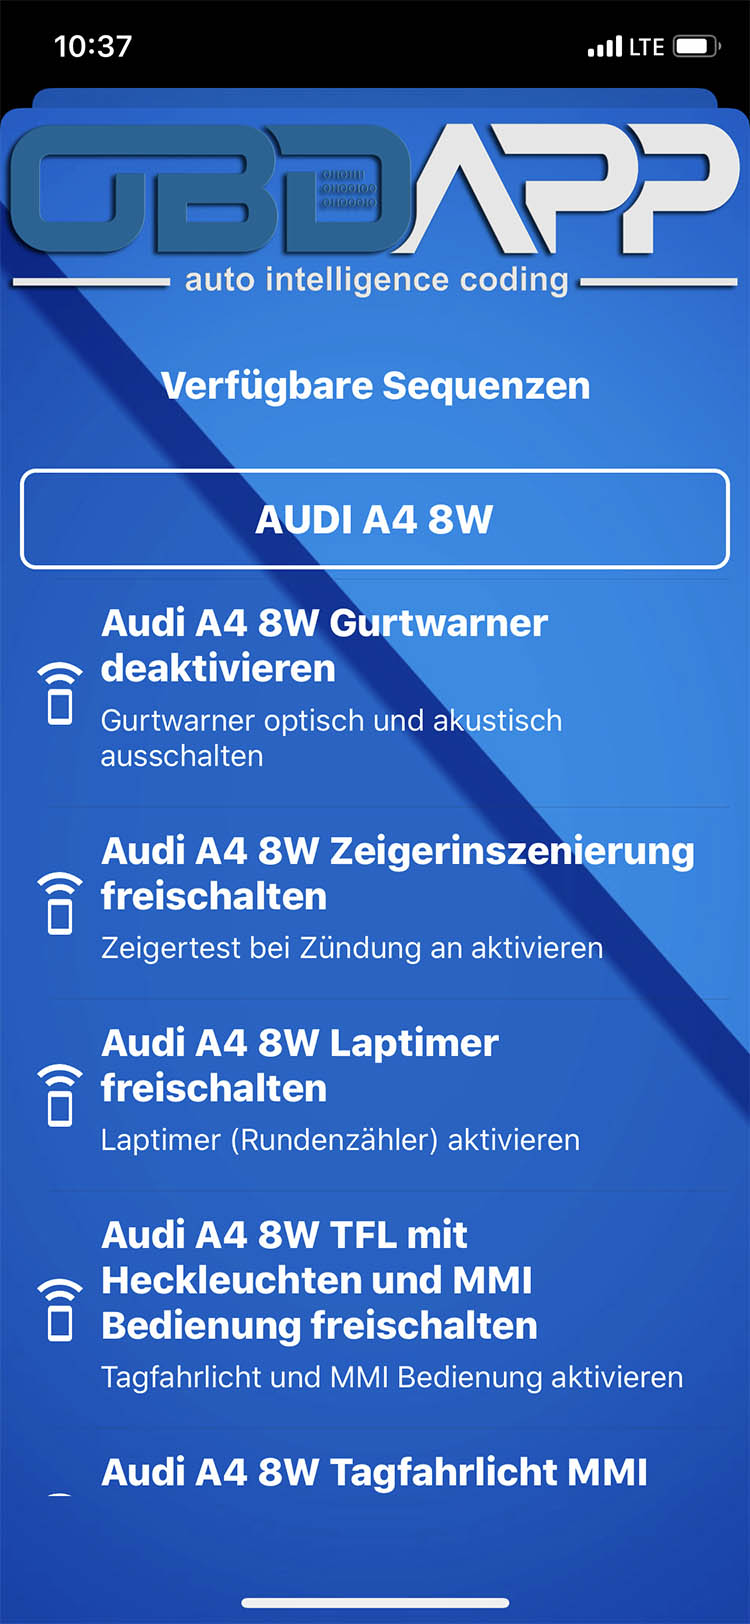 OBDAPP Shop - Audi A8 4N Türbeleuchtung nachgerüstet freischalten